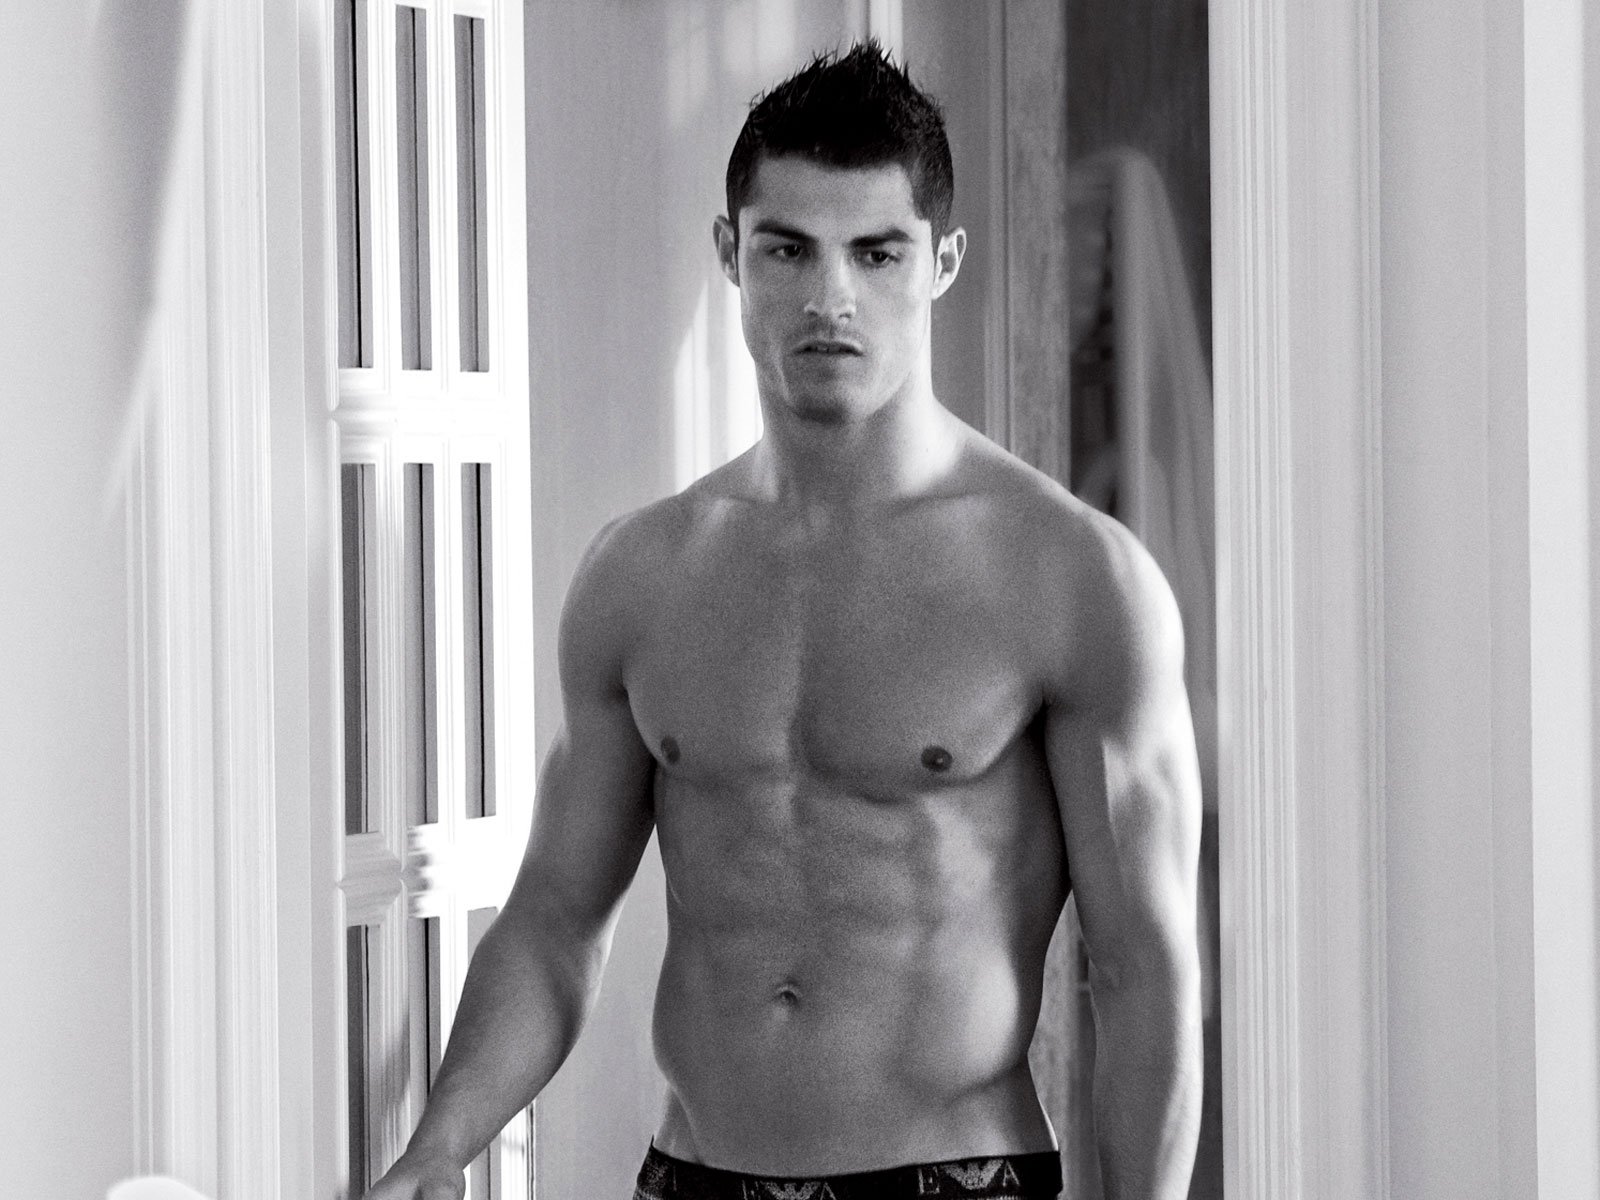 hambruna Producto Cuerpo NewSchool on Twitter: "¿Por qué Cristiano Ronaldo no se ha tatuado nunca el  cuerpo? Cristiano Ronaldo crea las #Modas, aunque no las sigue. La estrella  del Real Madrid ha demostrado su rebeldía